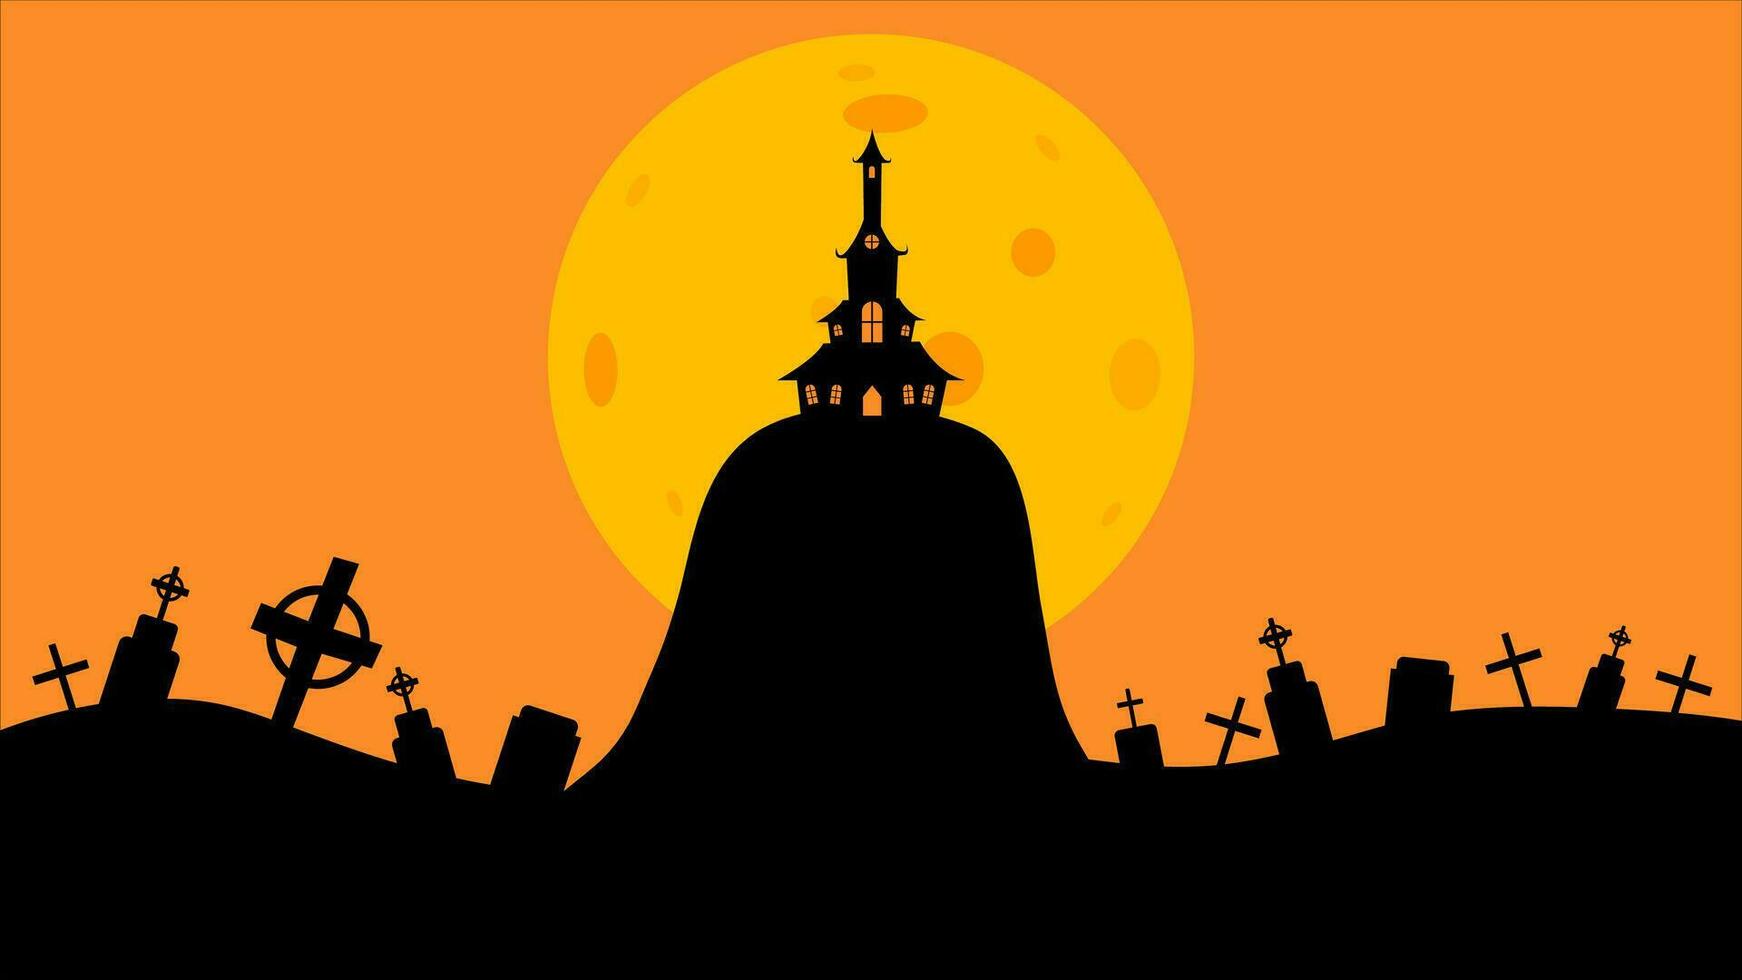 Halloween Schloss eben Design Vektor Illustration. Halloween Banner mit Silhouette von unheimlich Schloss auf Orange Hintergrund mit voll Mond. Illustration zum Urlaub Karten, Einladungen, Banner